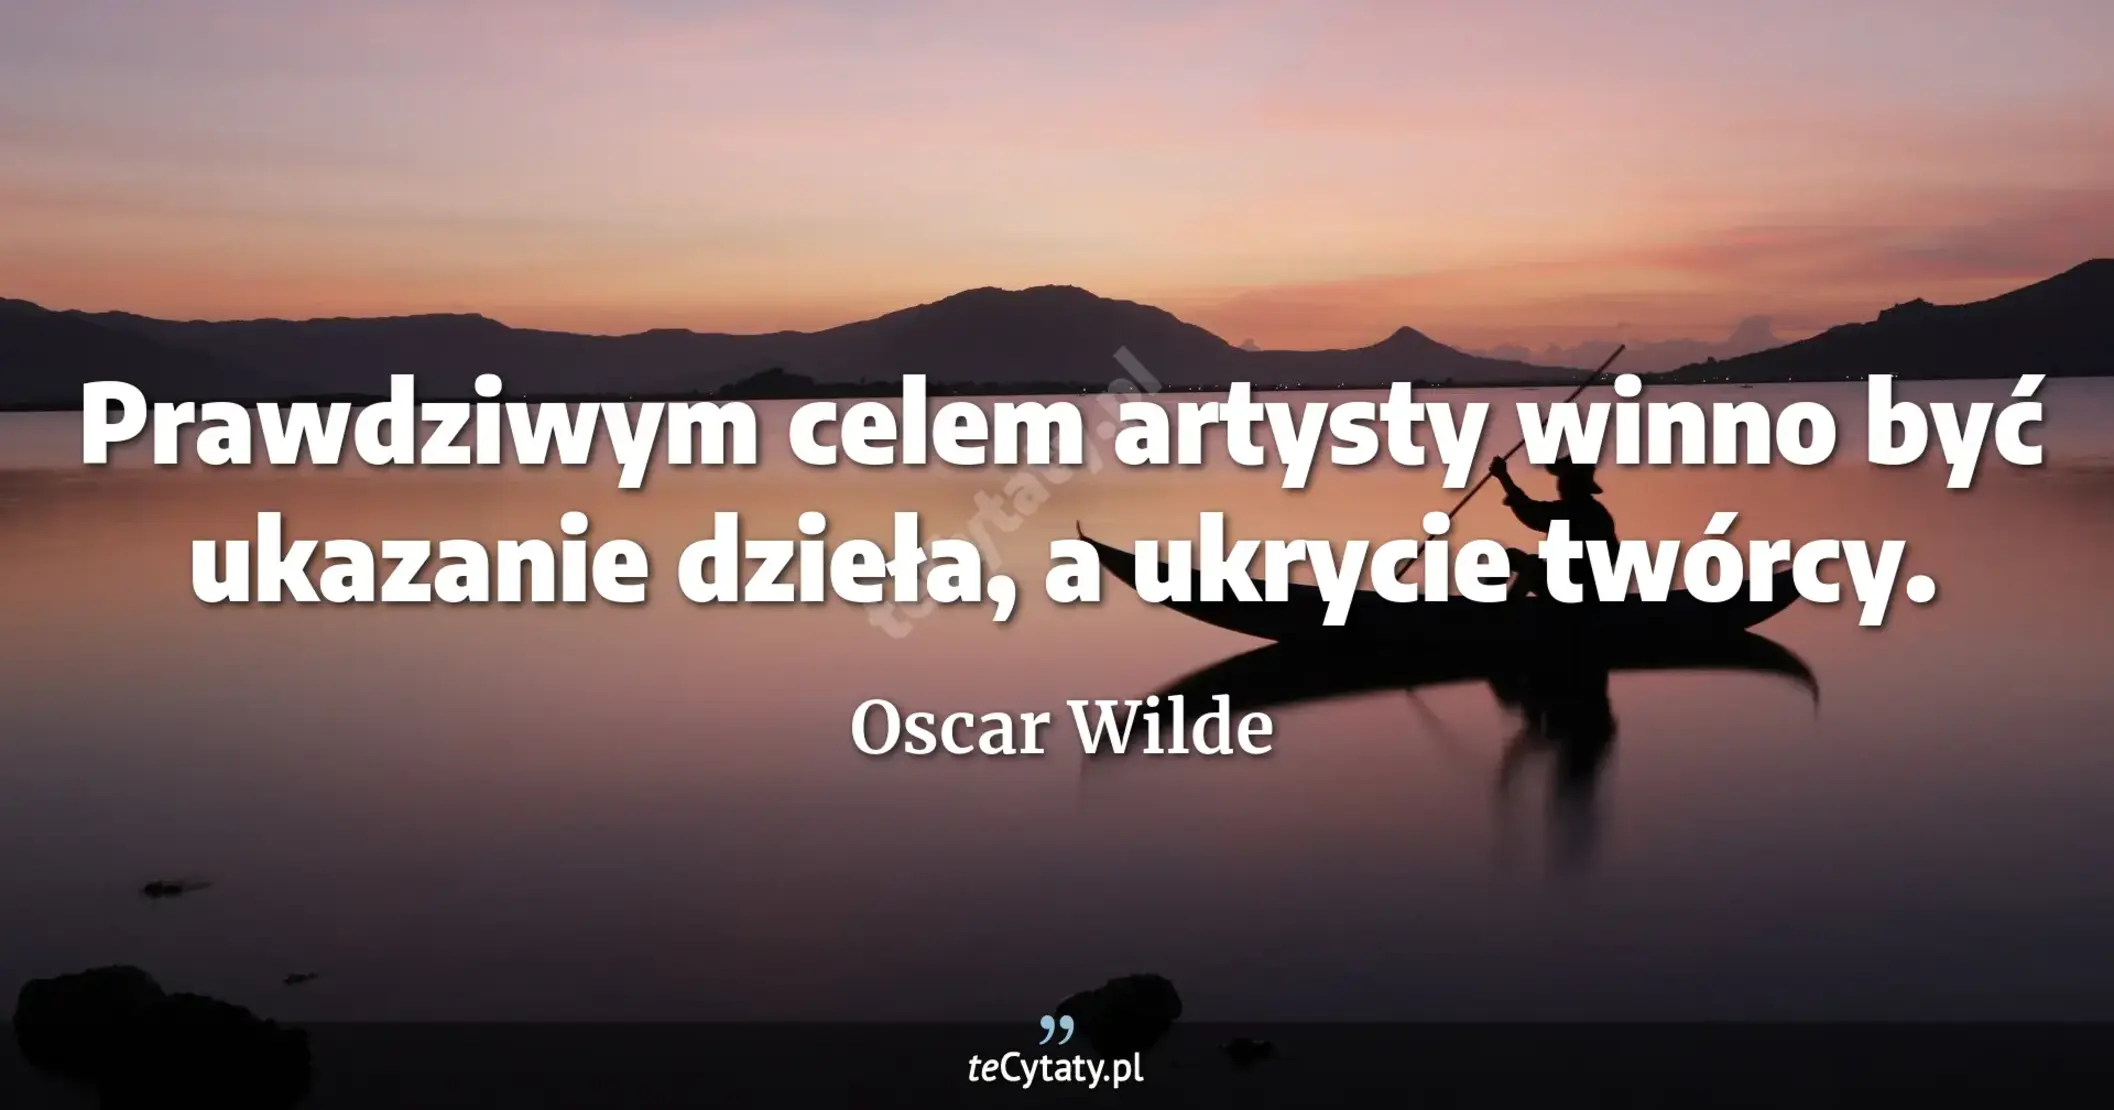 Prawdziwym celem artysty winno być ukazanie dzieła, a ukrycie twórcy. - Oscar Wilde